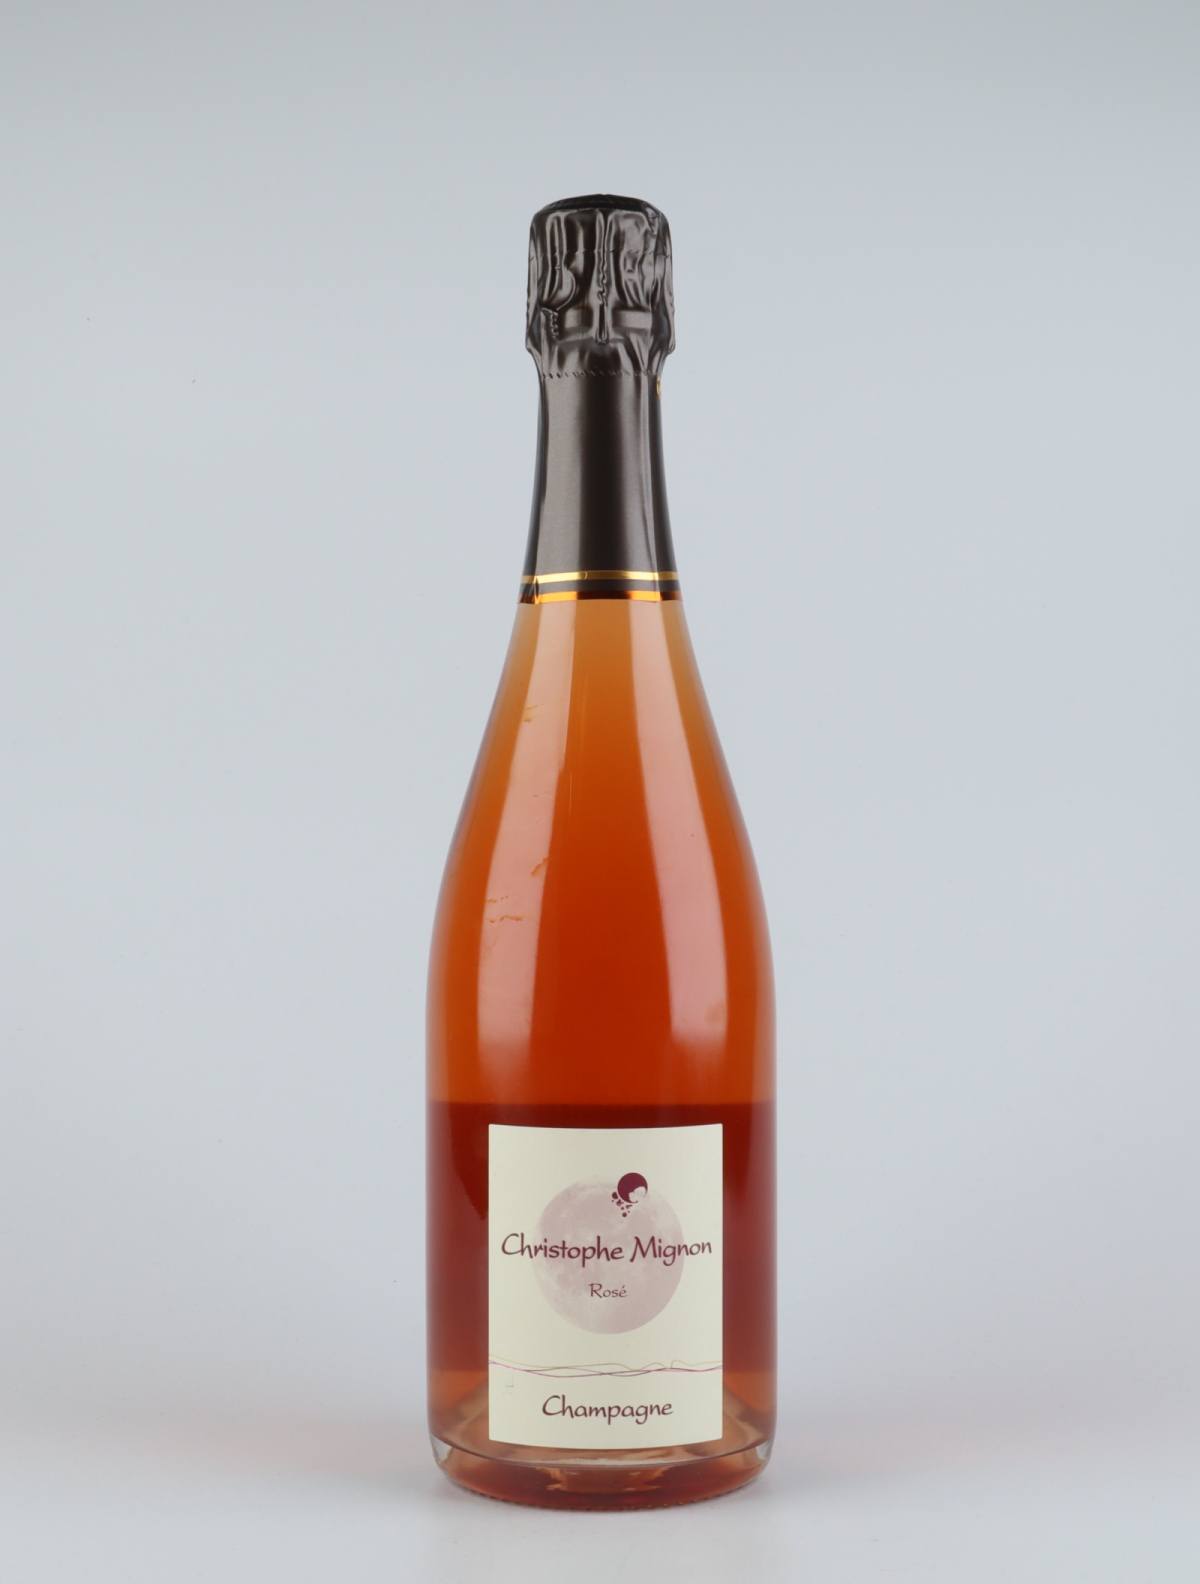 En flaske N.V. Rosé Pur Meunier Mousserende fra Christophe Mignon, Champagne i Frankrig